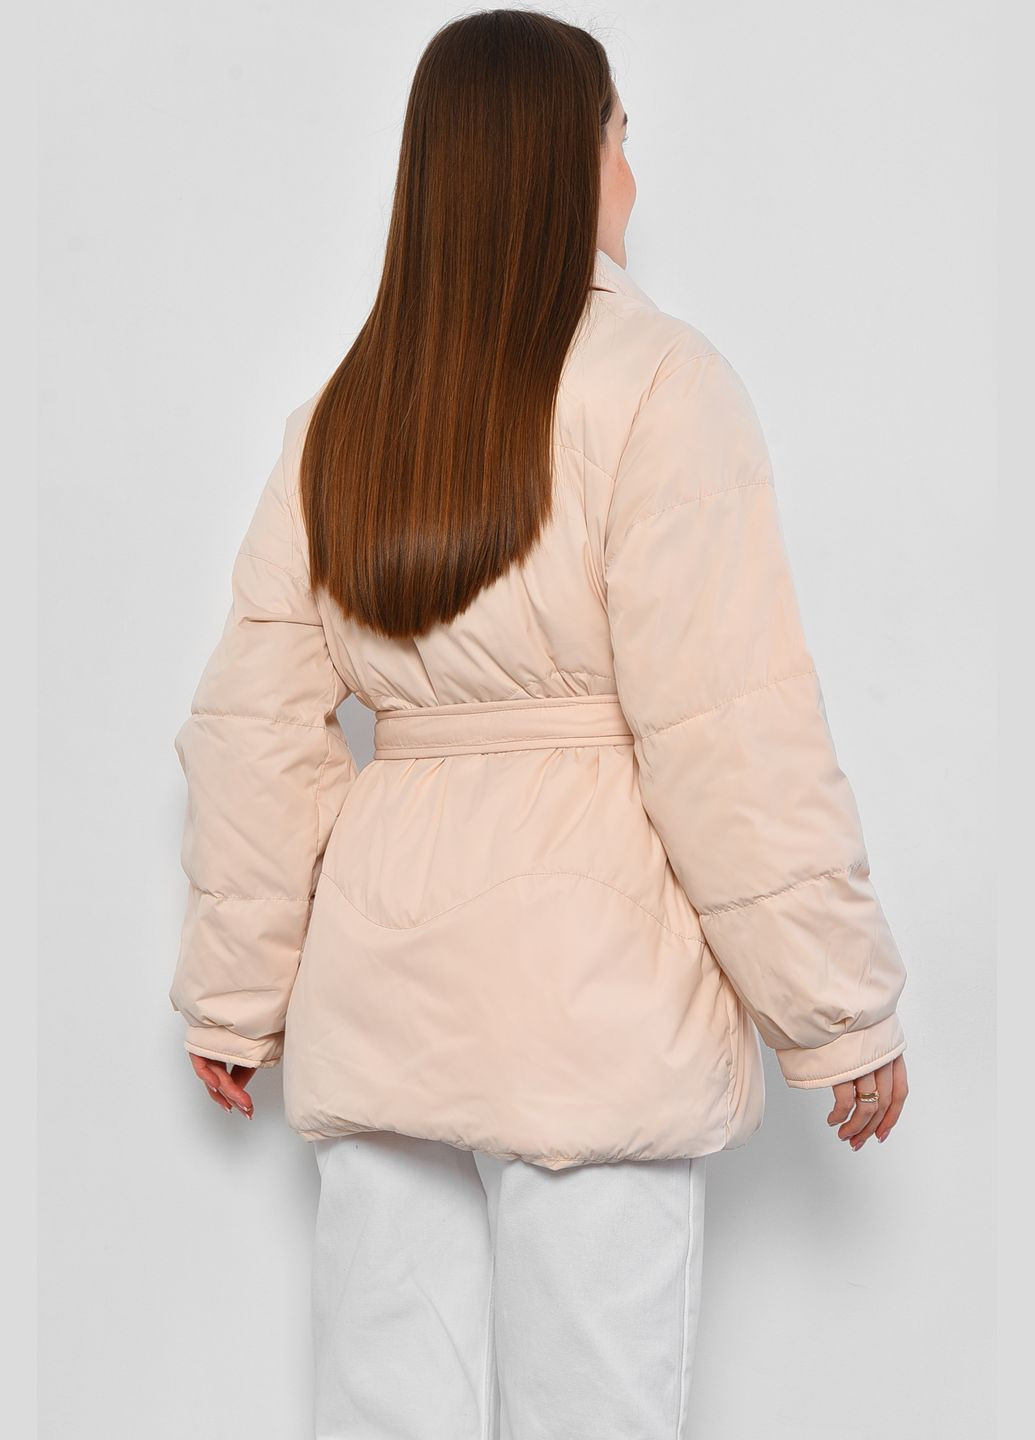 Молочная демисезонная куртка женская демисезонная молочного цвета Let's Shop